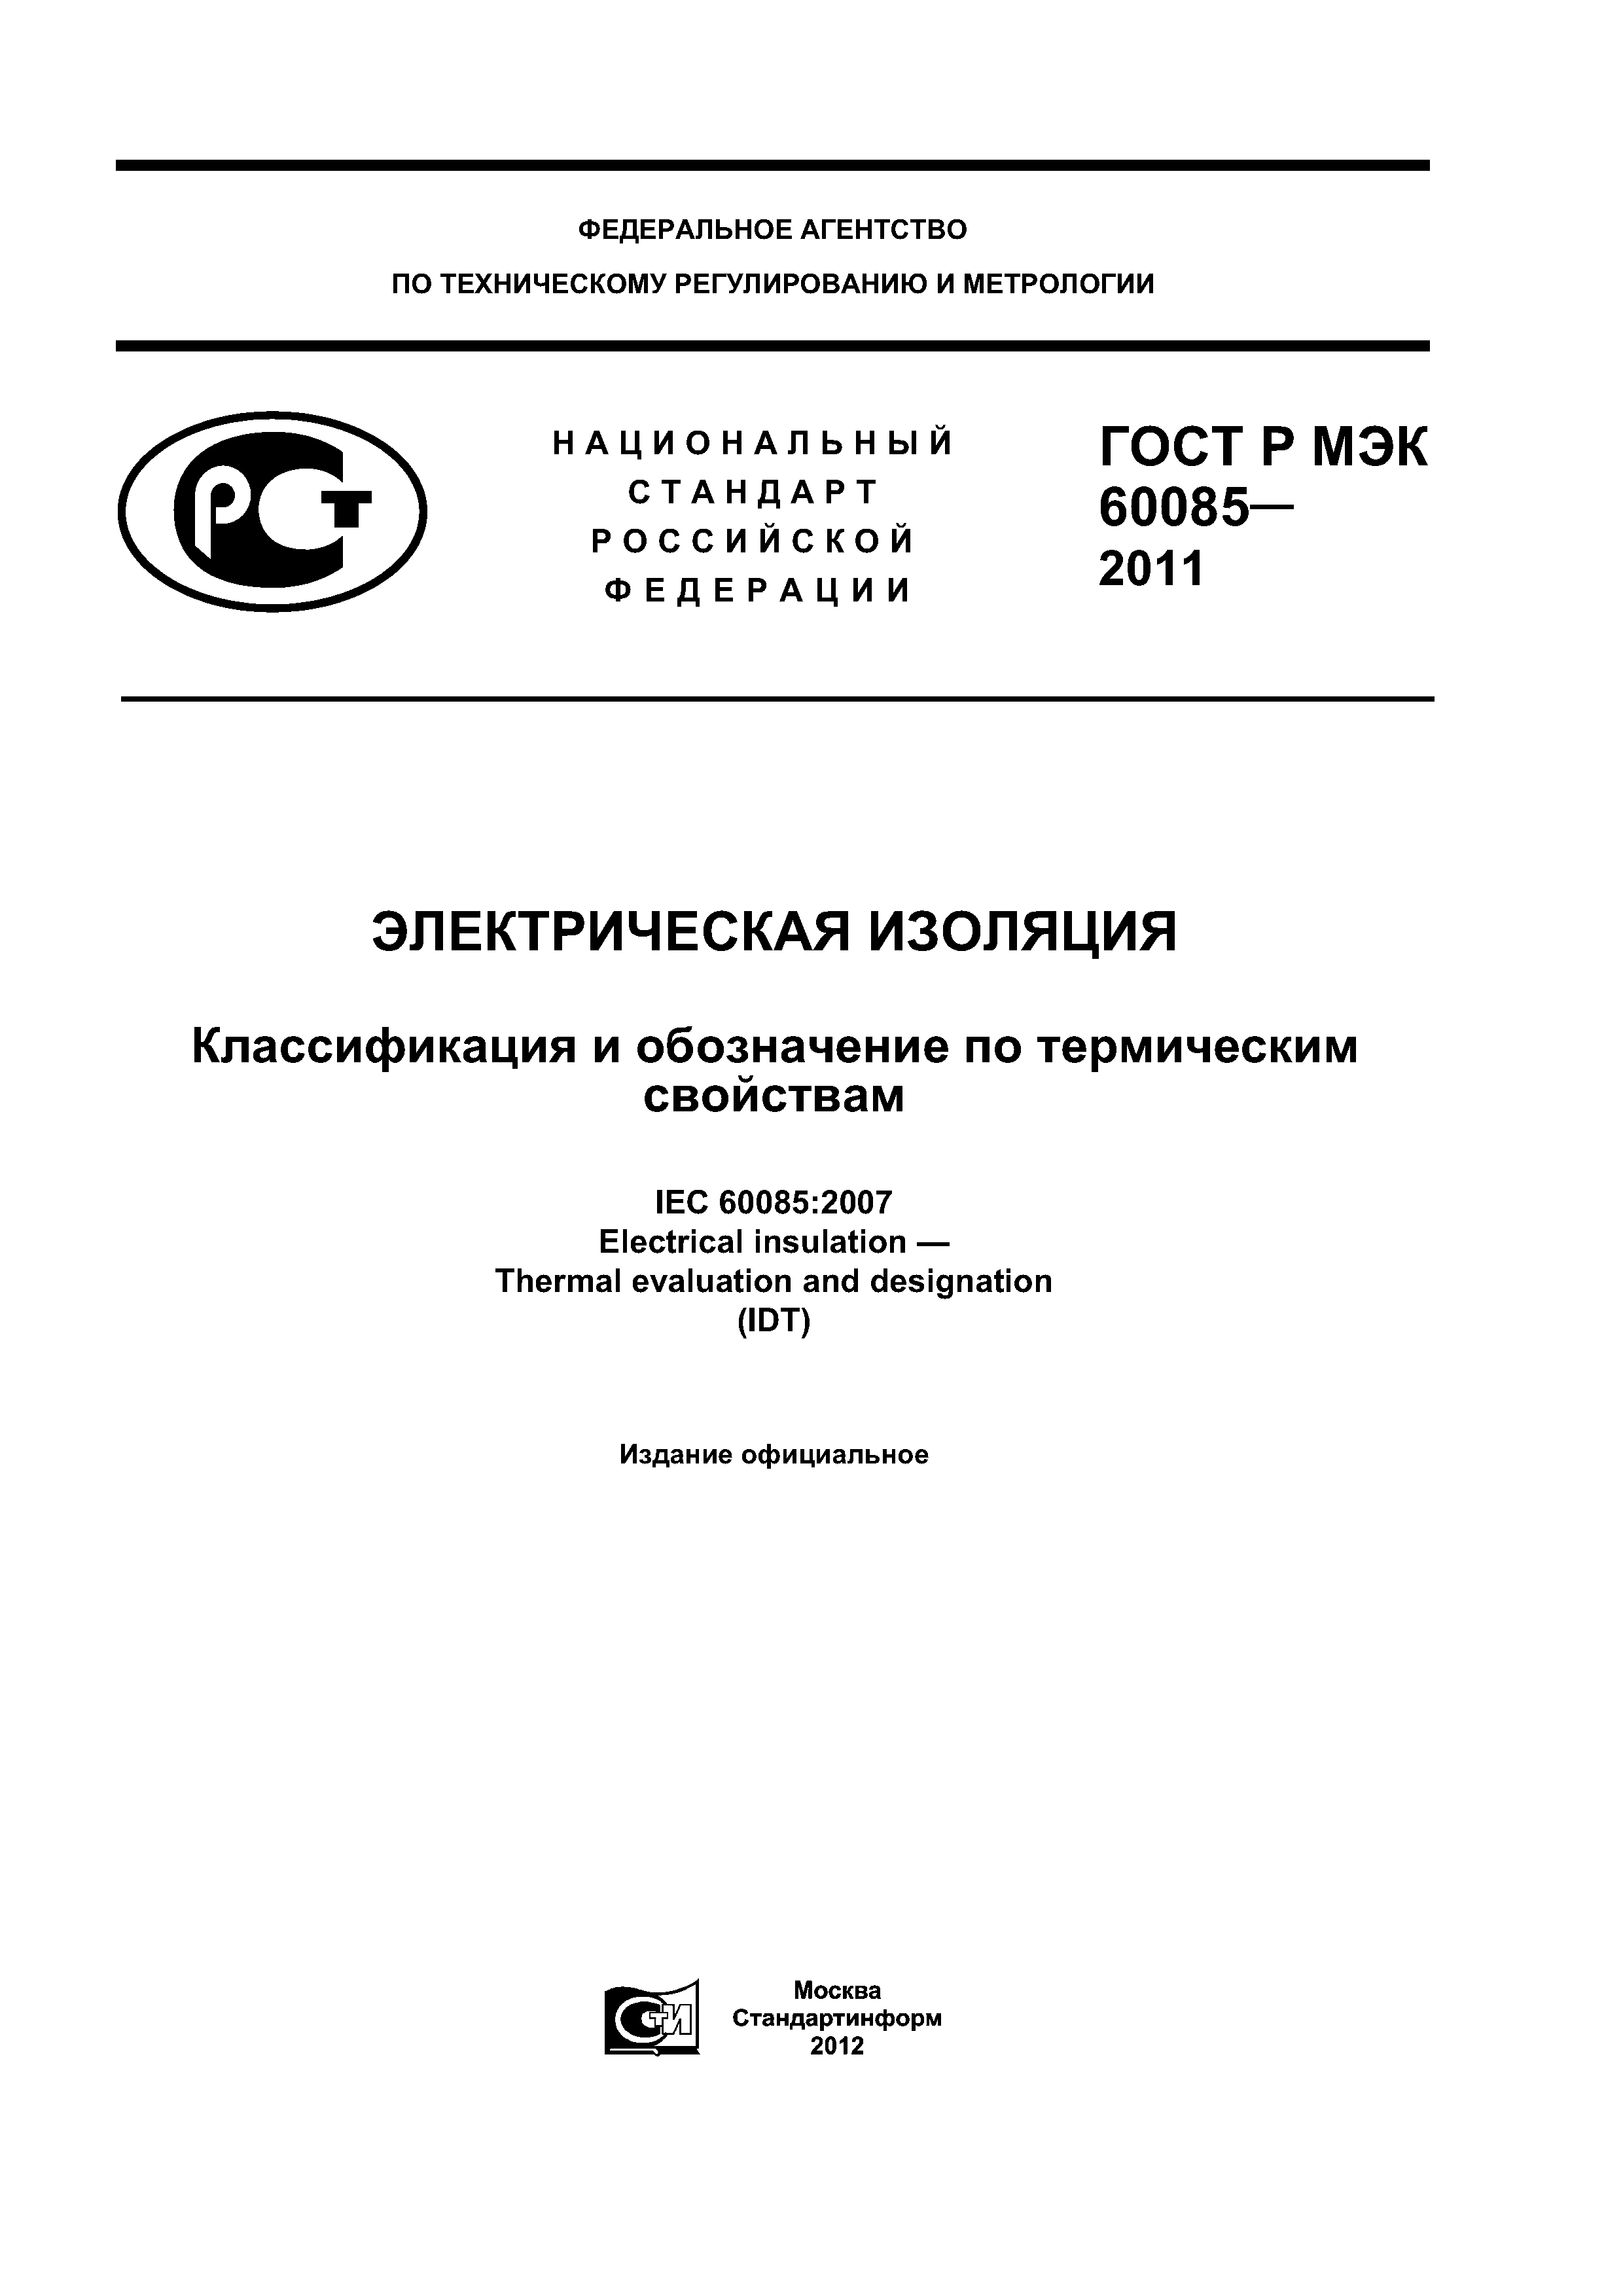 ГОСТ Р МЭК 60085-2011